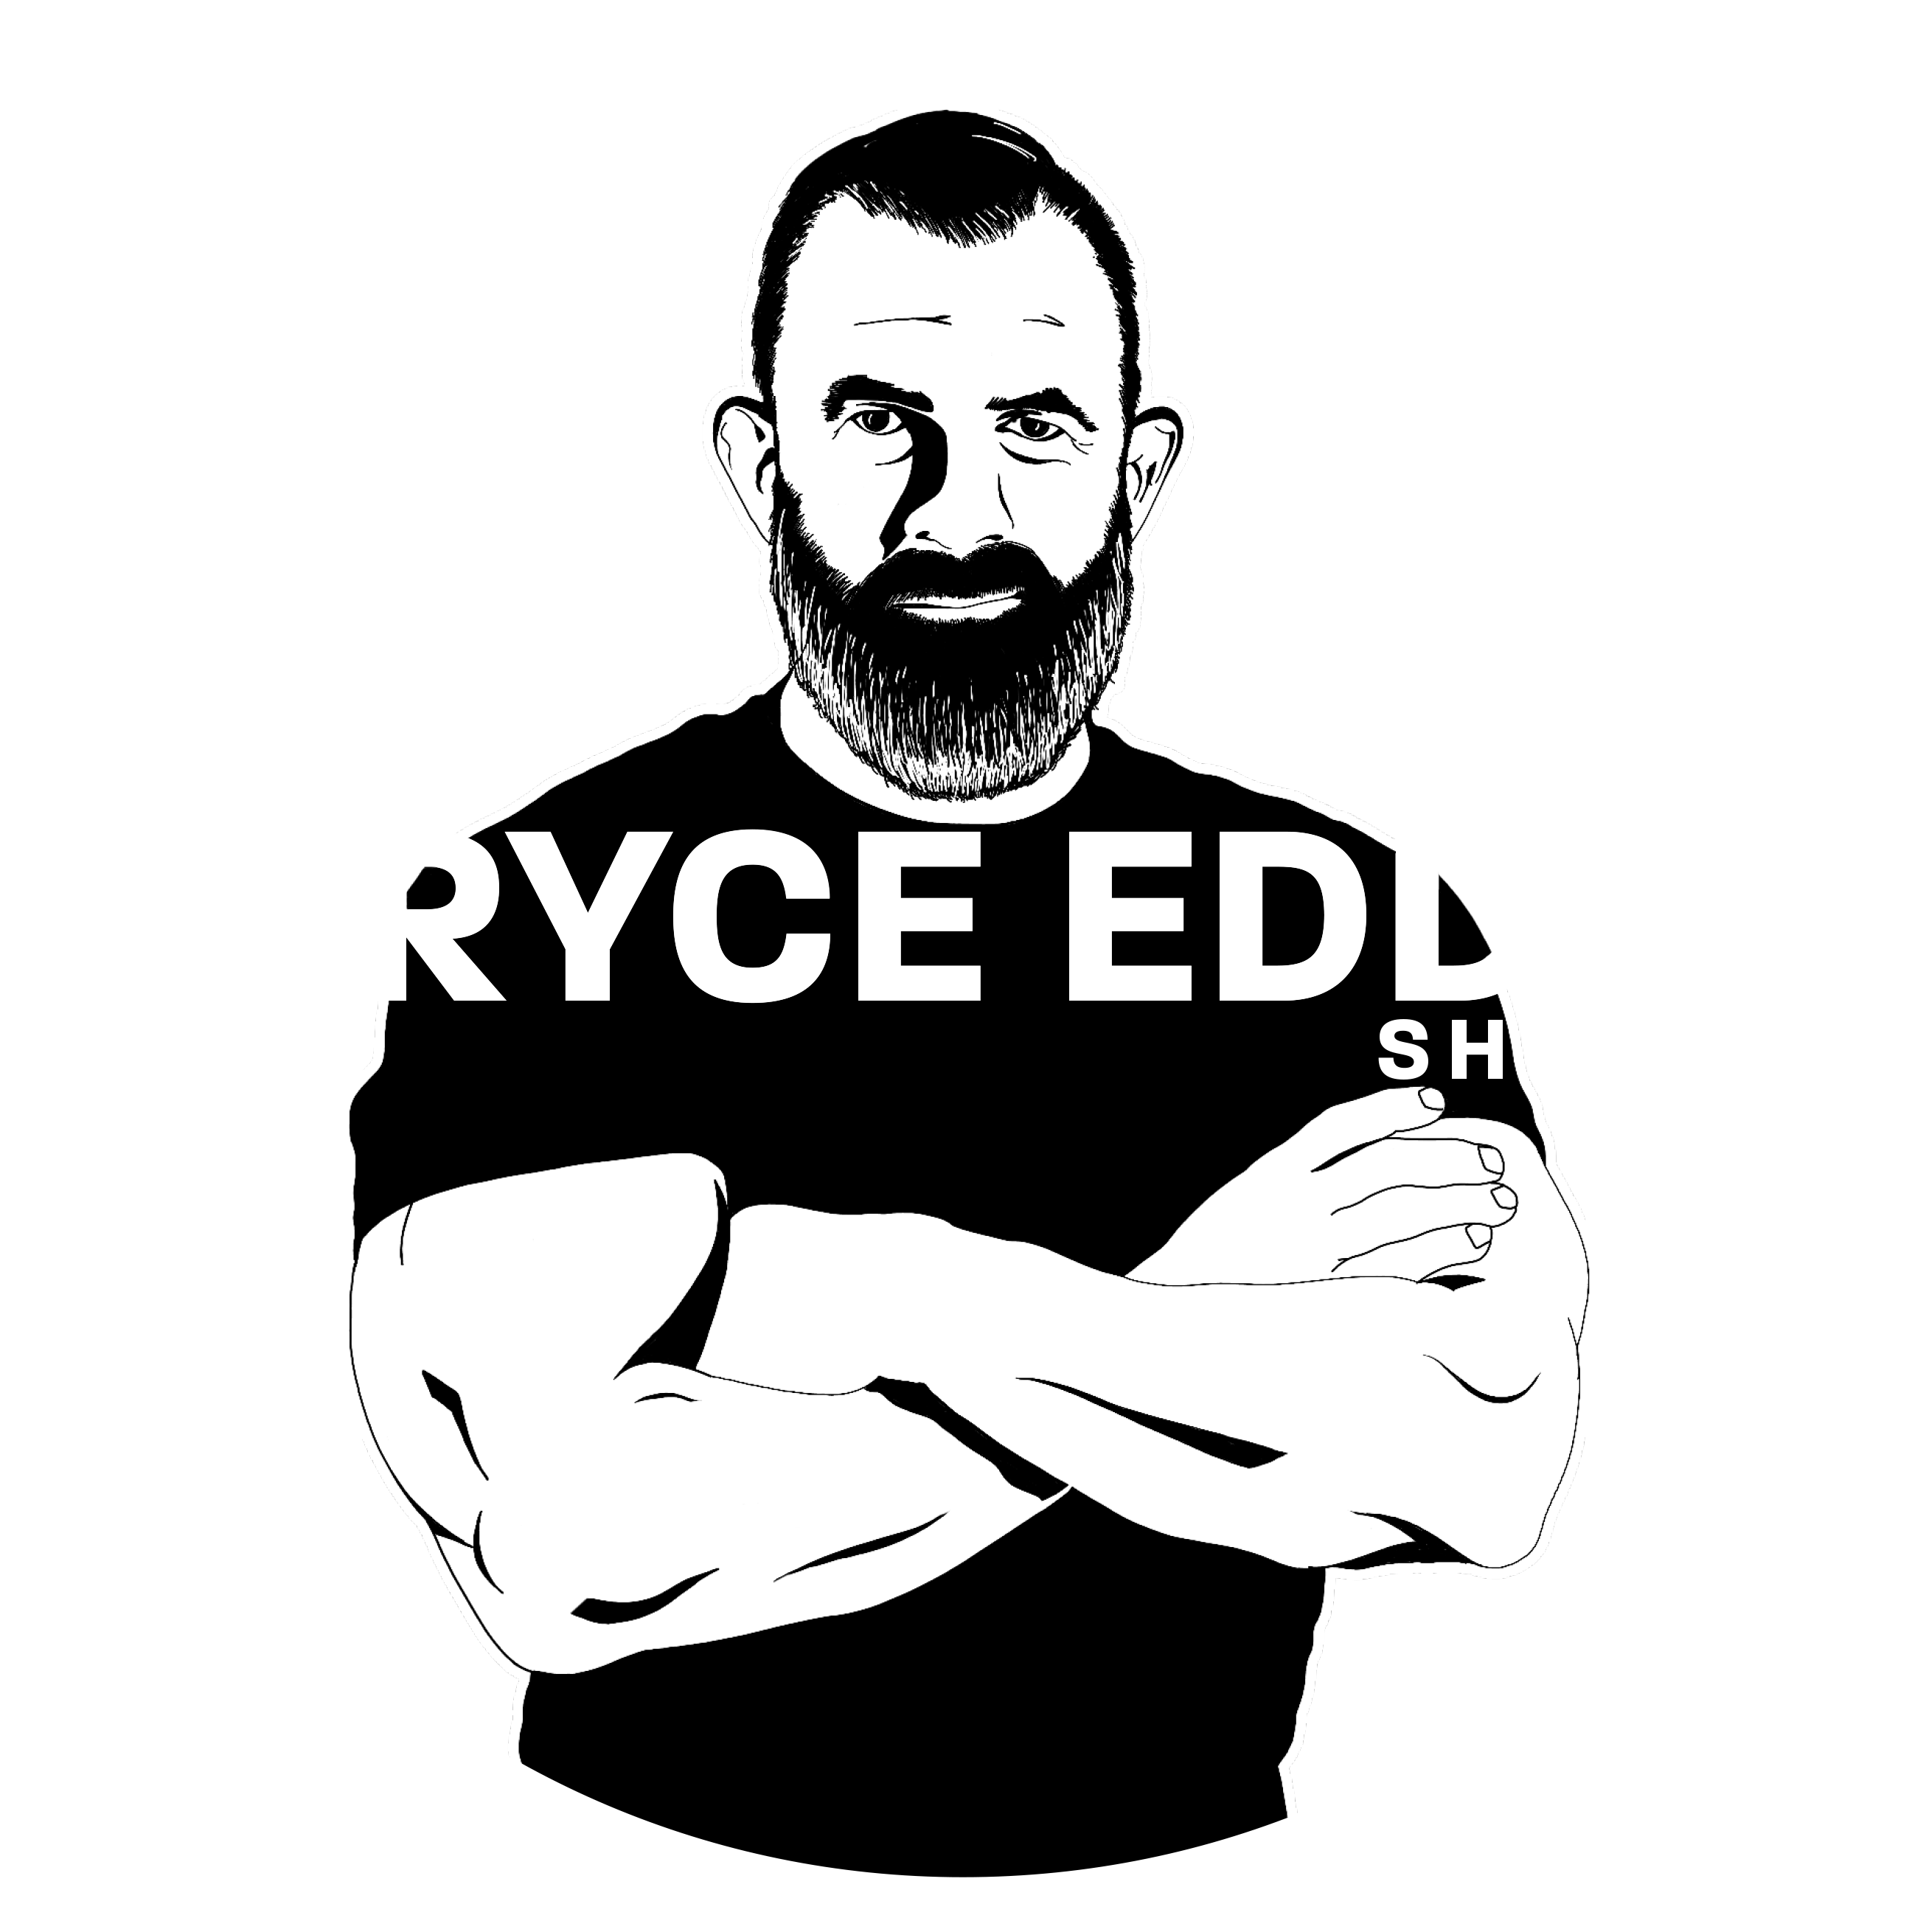 Bryce Eddy